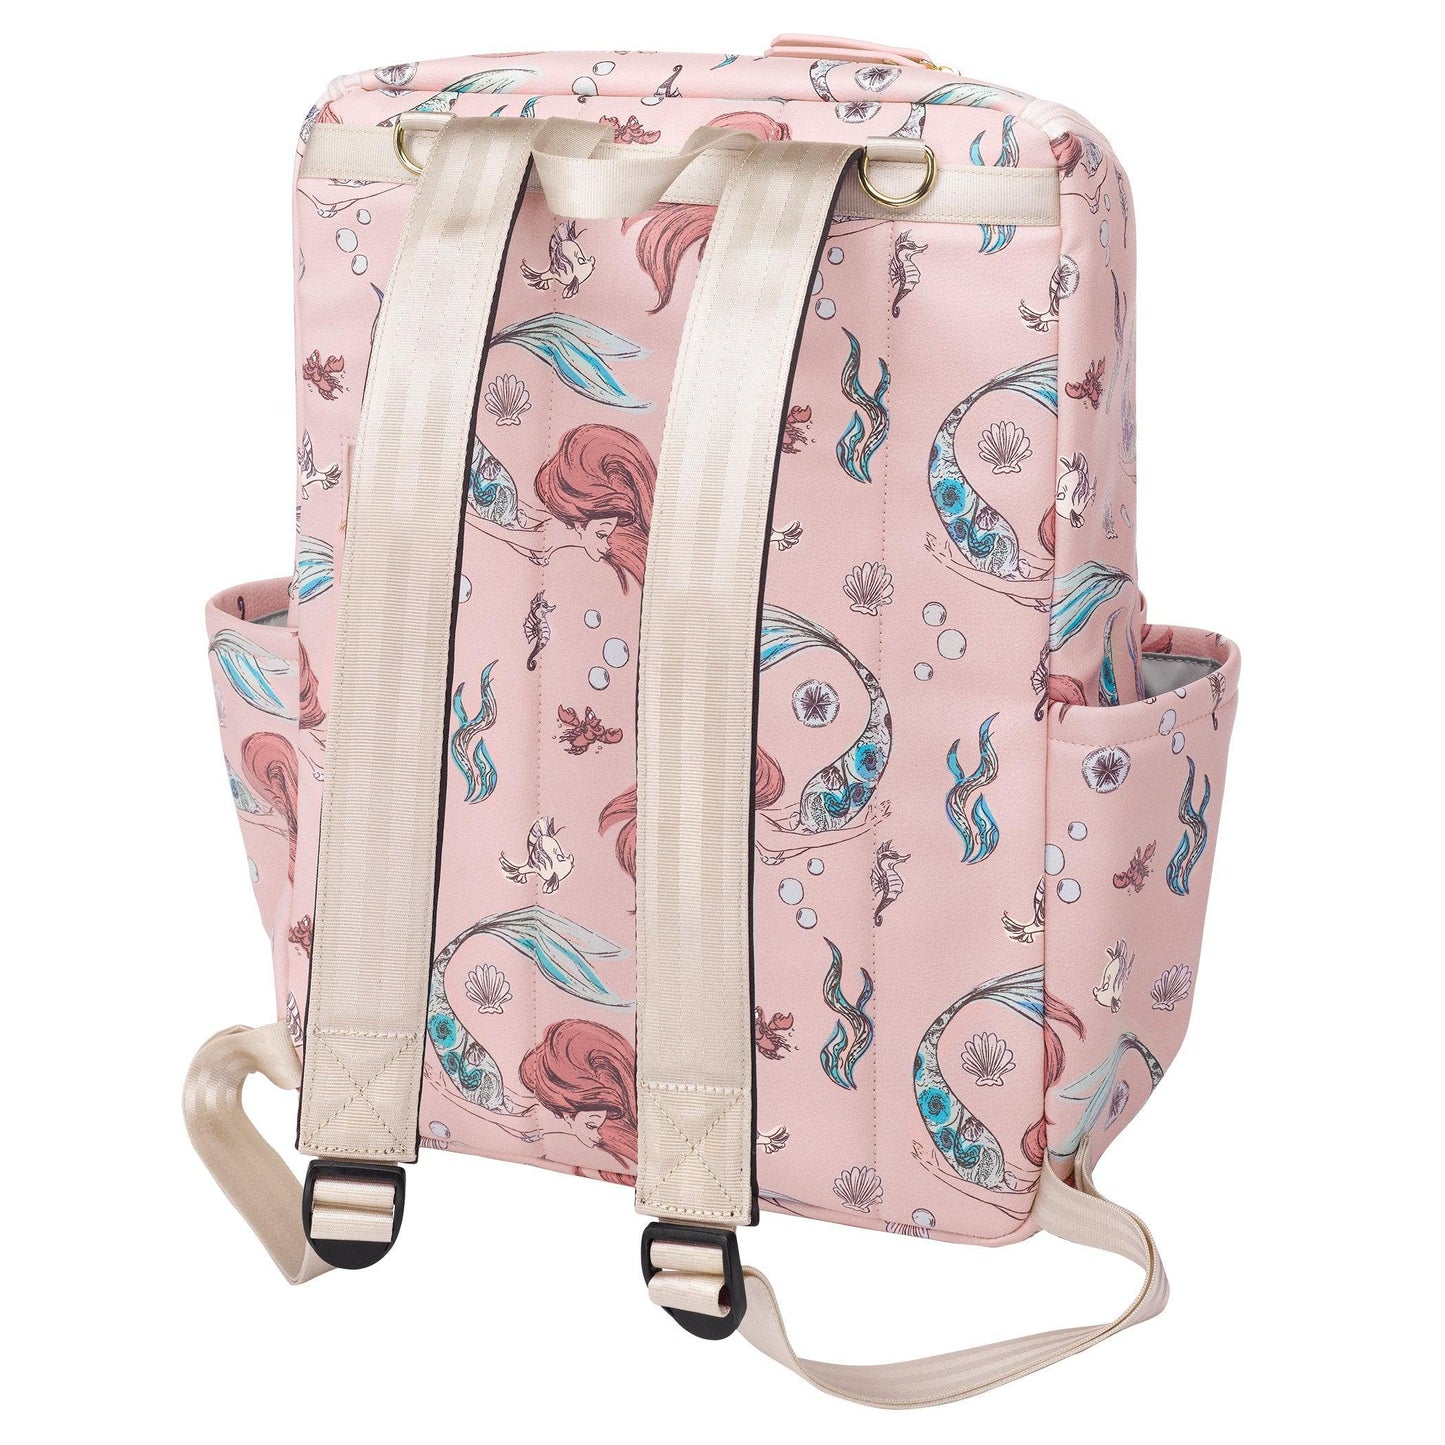 Petunia Pickle Bottom Method Backpack Diaper Bag in Disney's Little Mermaid